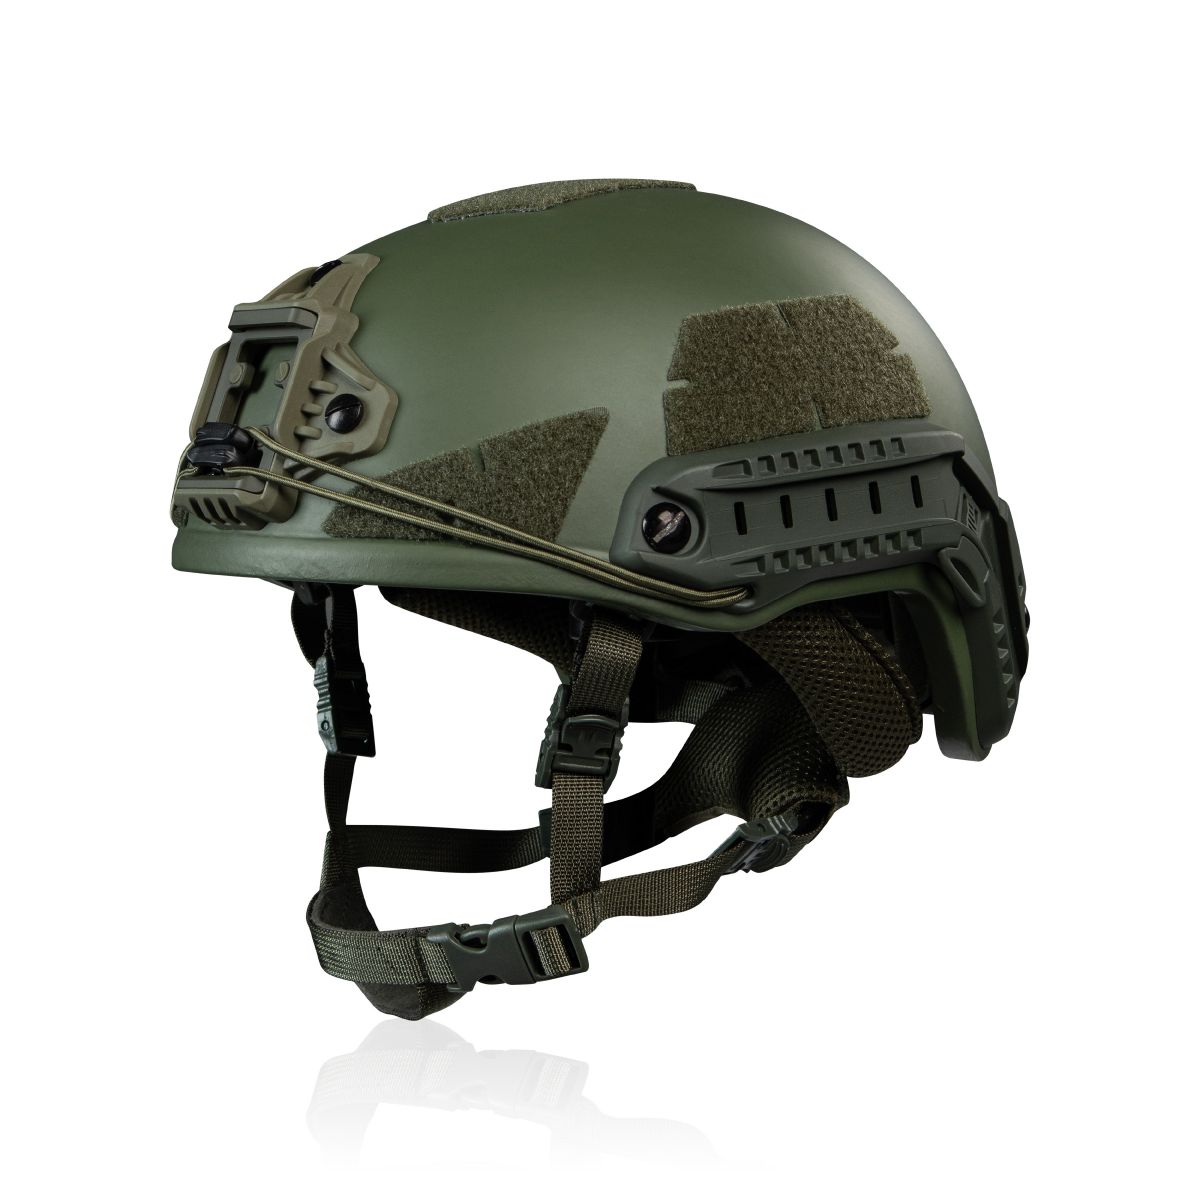 Кевларовый шлем TOR-D-VN (улучшенный). Производитель: Украина. Цвет Олива L